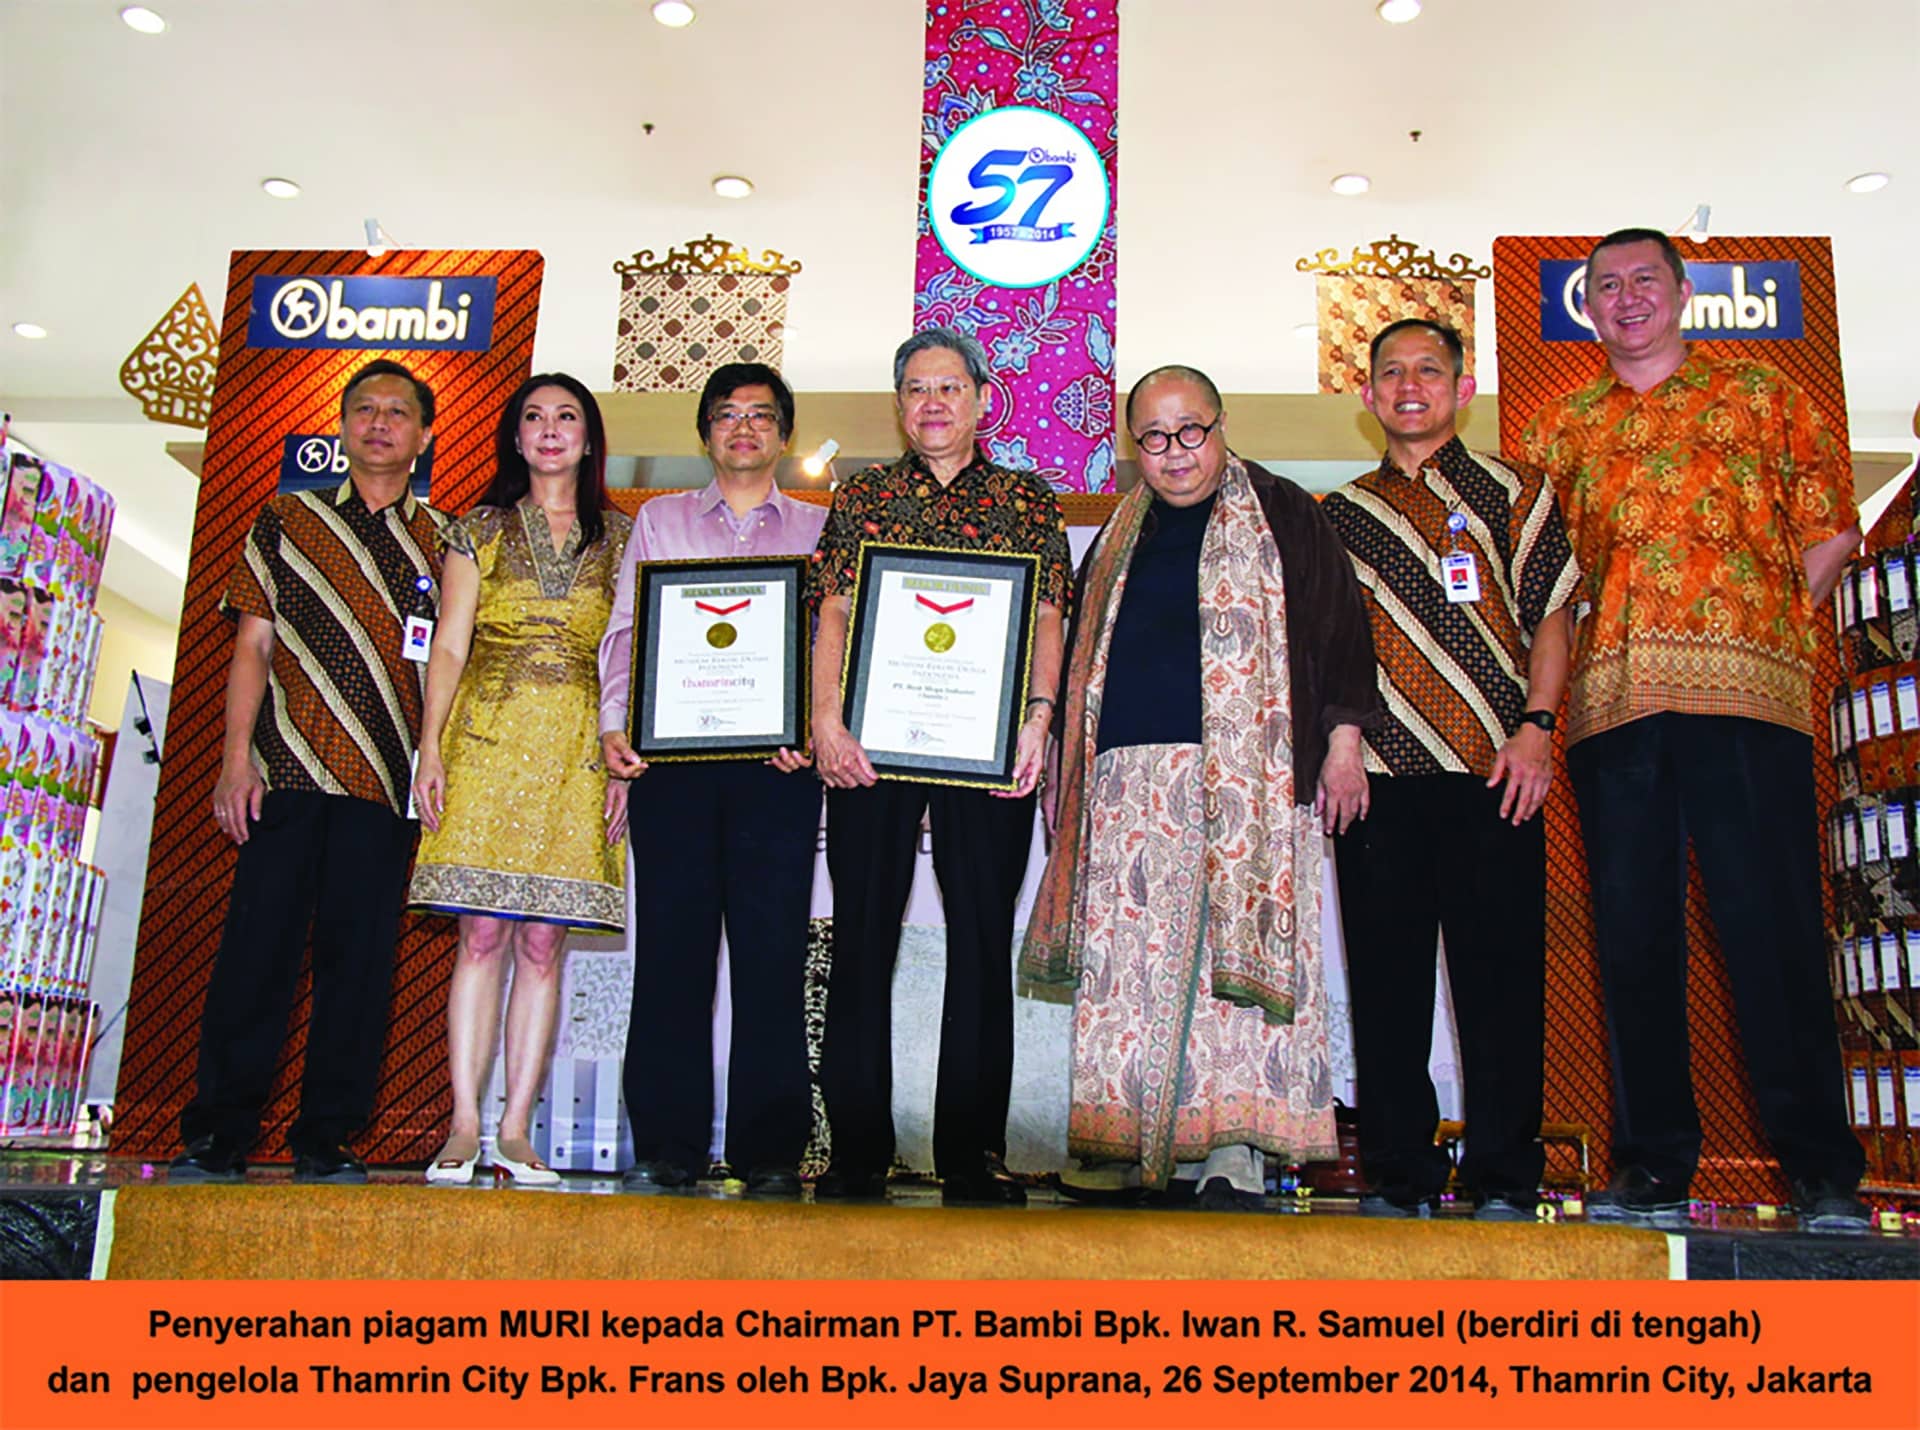 Rekor Muri “Ordner Bermotif Batik Pertama”  di Ulang Tahun Bambi ke 57 Tahun